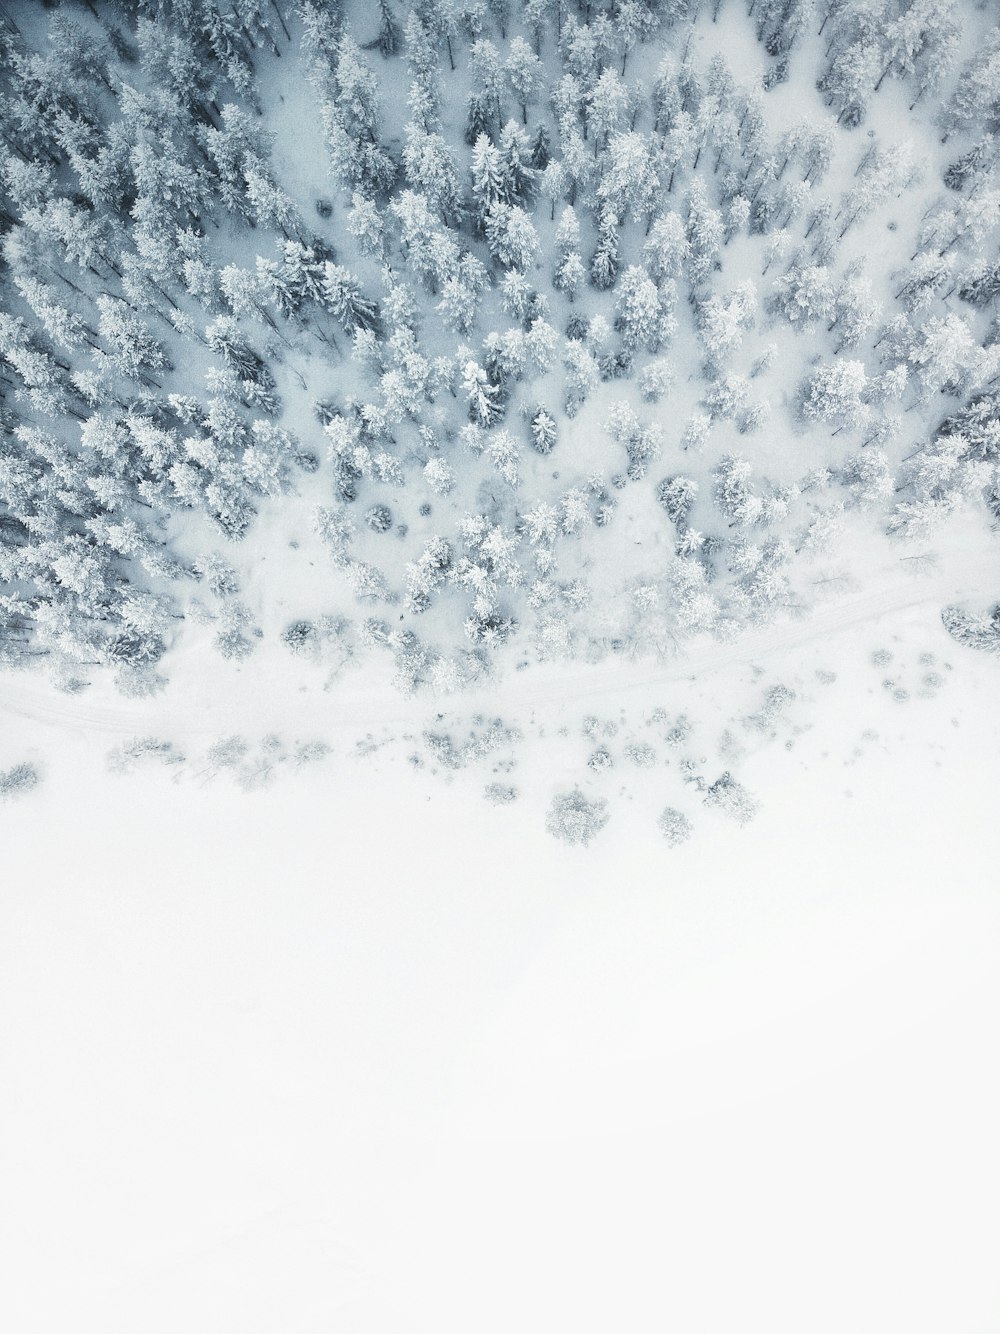 Luftaufnahme eines schneebedeckten Baumgrundstücks